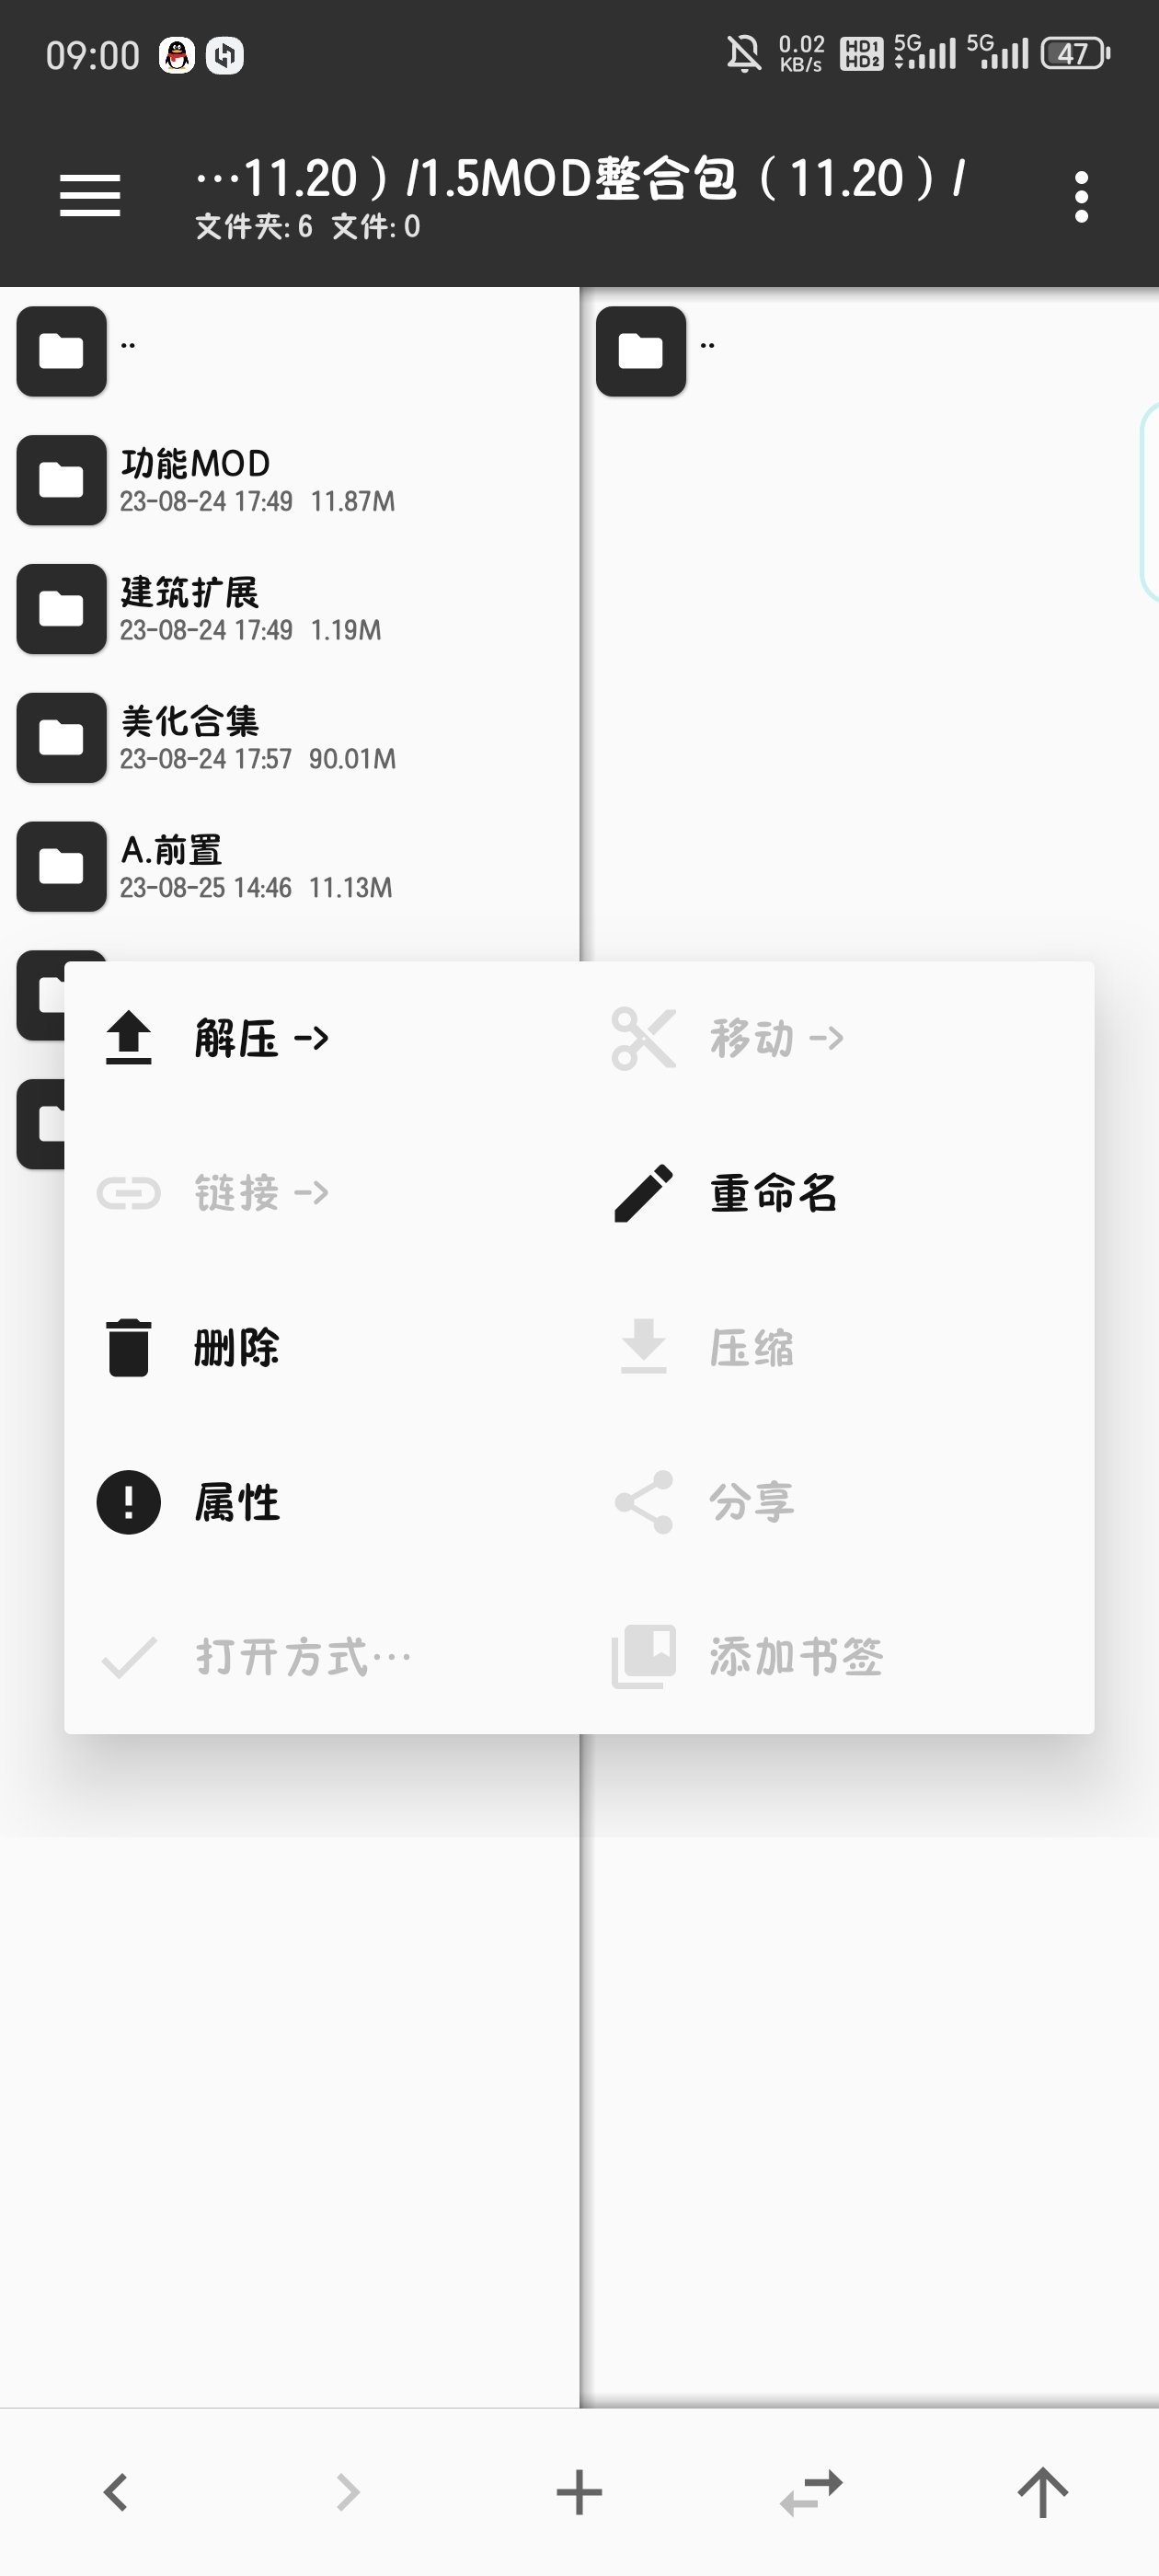 星露谷物语手机版mod安装、电脑版存档导入手机-第24张